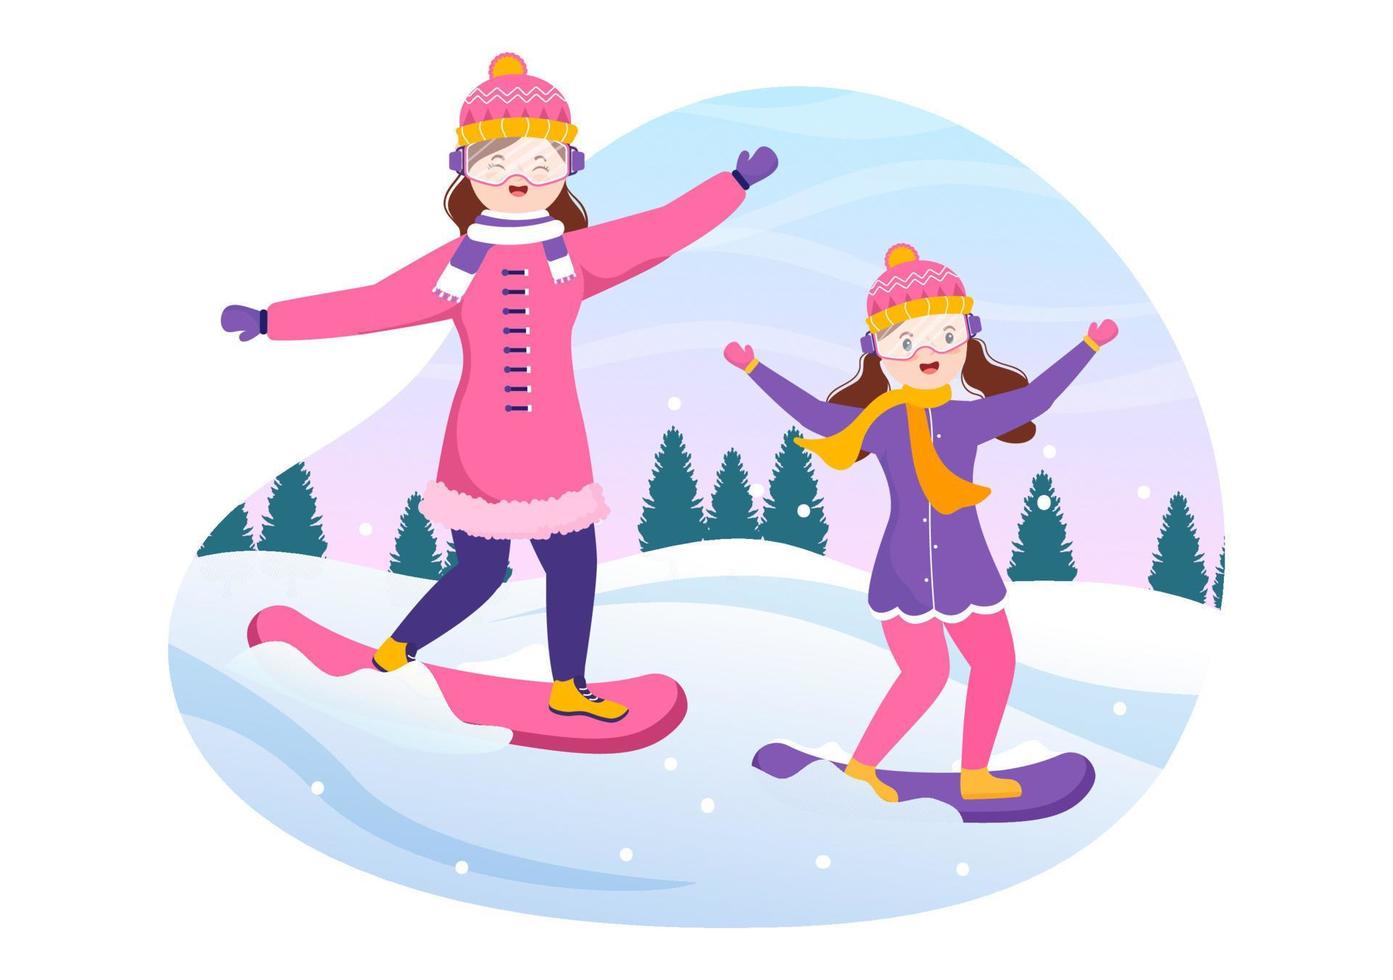 illustrazione piatta del fumetto disegnato a mano di snowboard di persone in abito invernale che scivolano e saltano con gli snowboard sui lati o sui pendii innevati della montagna vettore